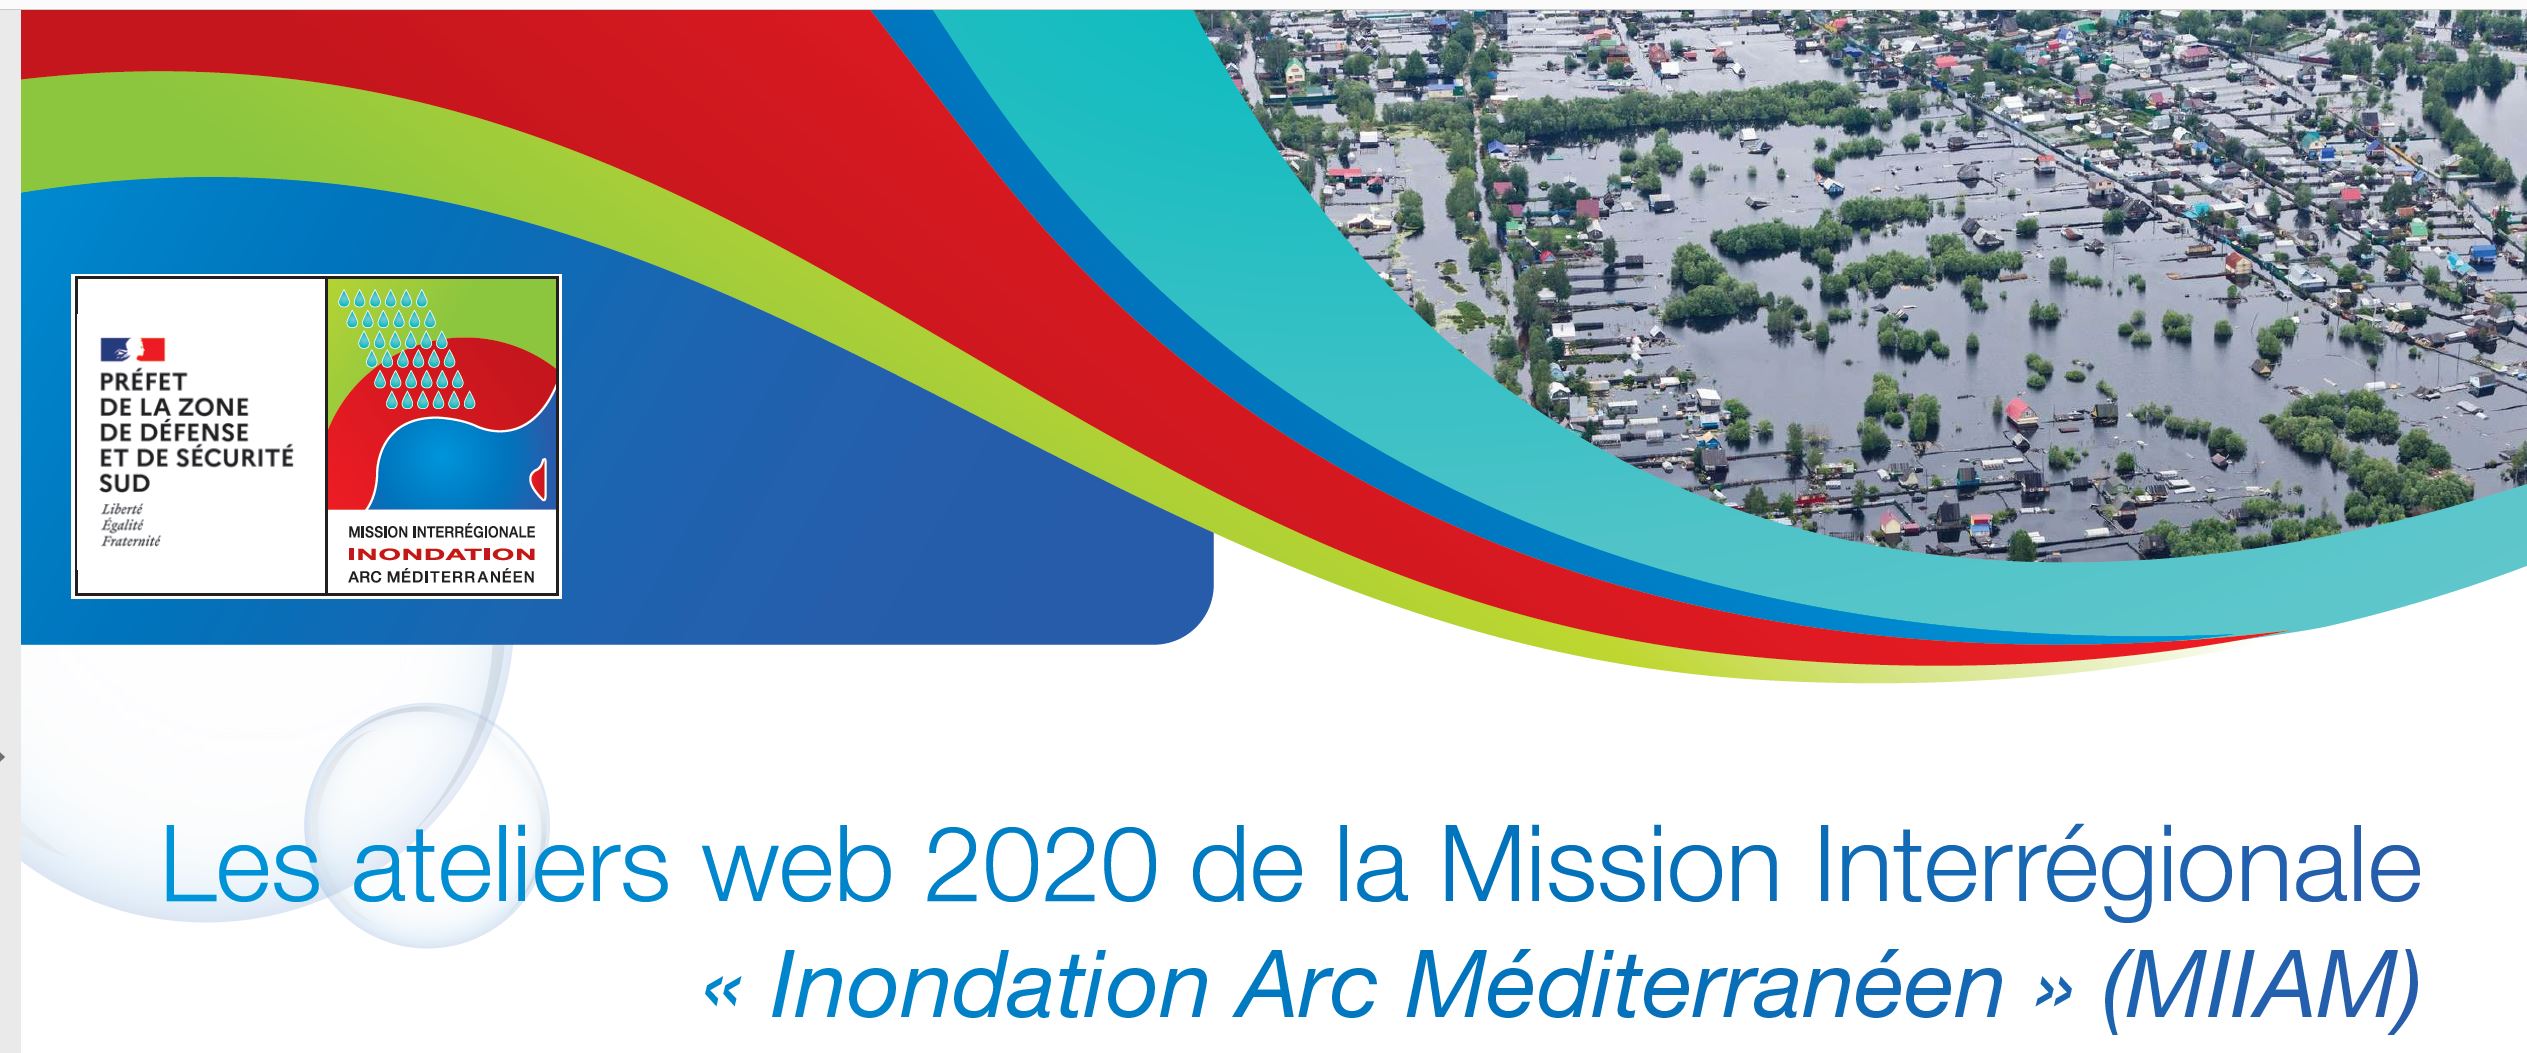 [PARTENAIRE] Atelier 2 de la Mission Interrégionale «Inondation Arc Méditerranéen (MIIAM)»